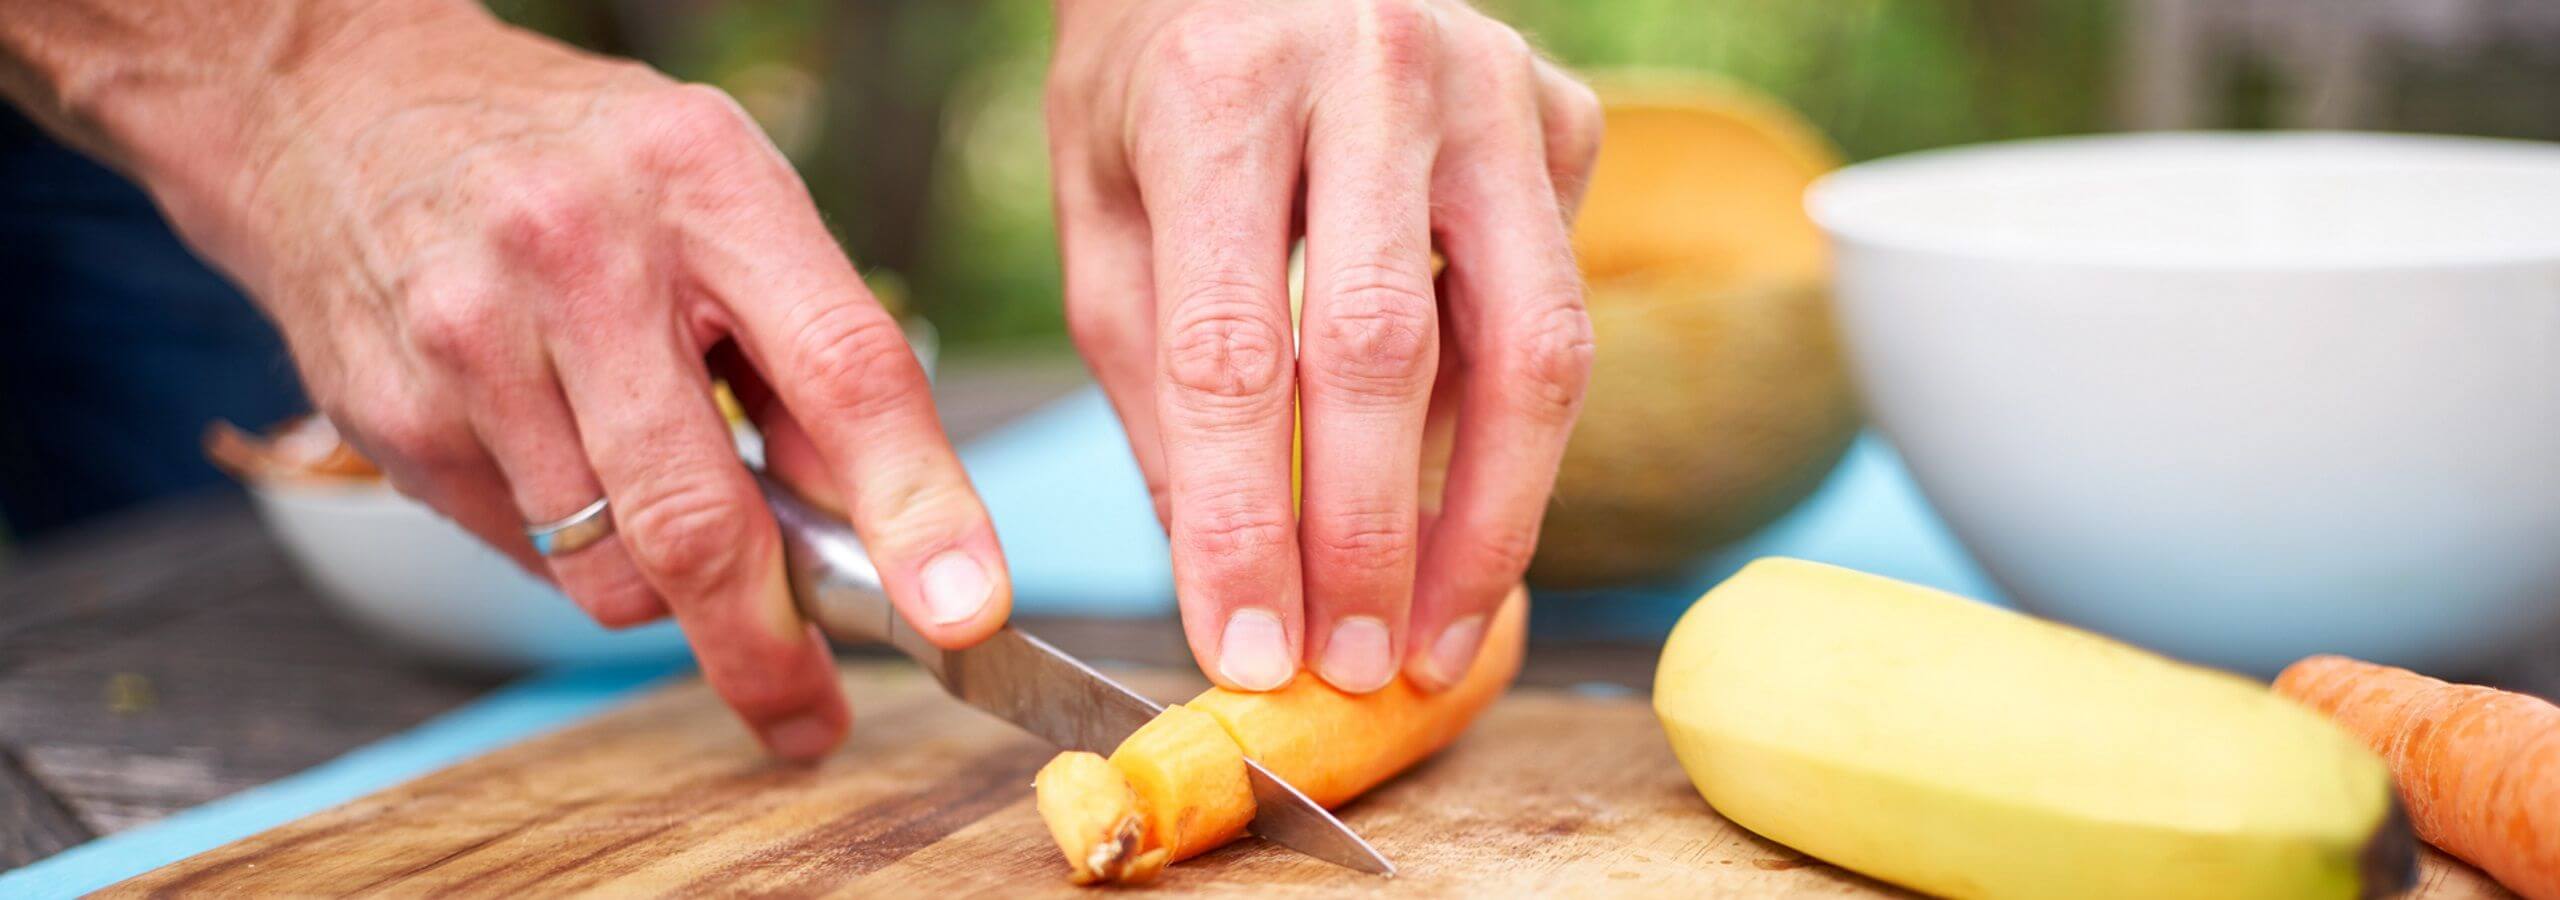 Mann schneidet eine Karotte